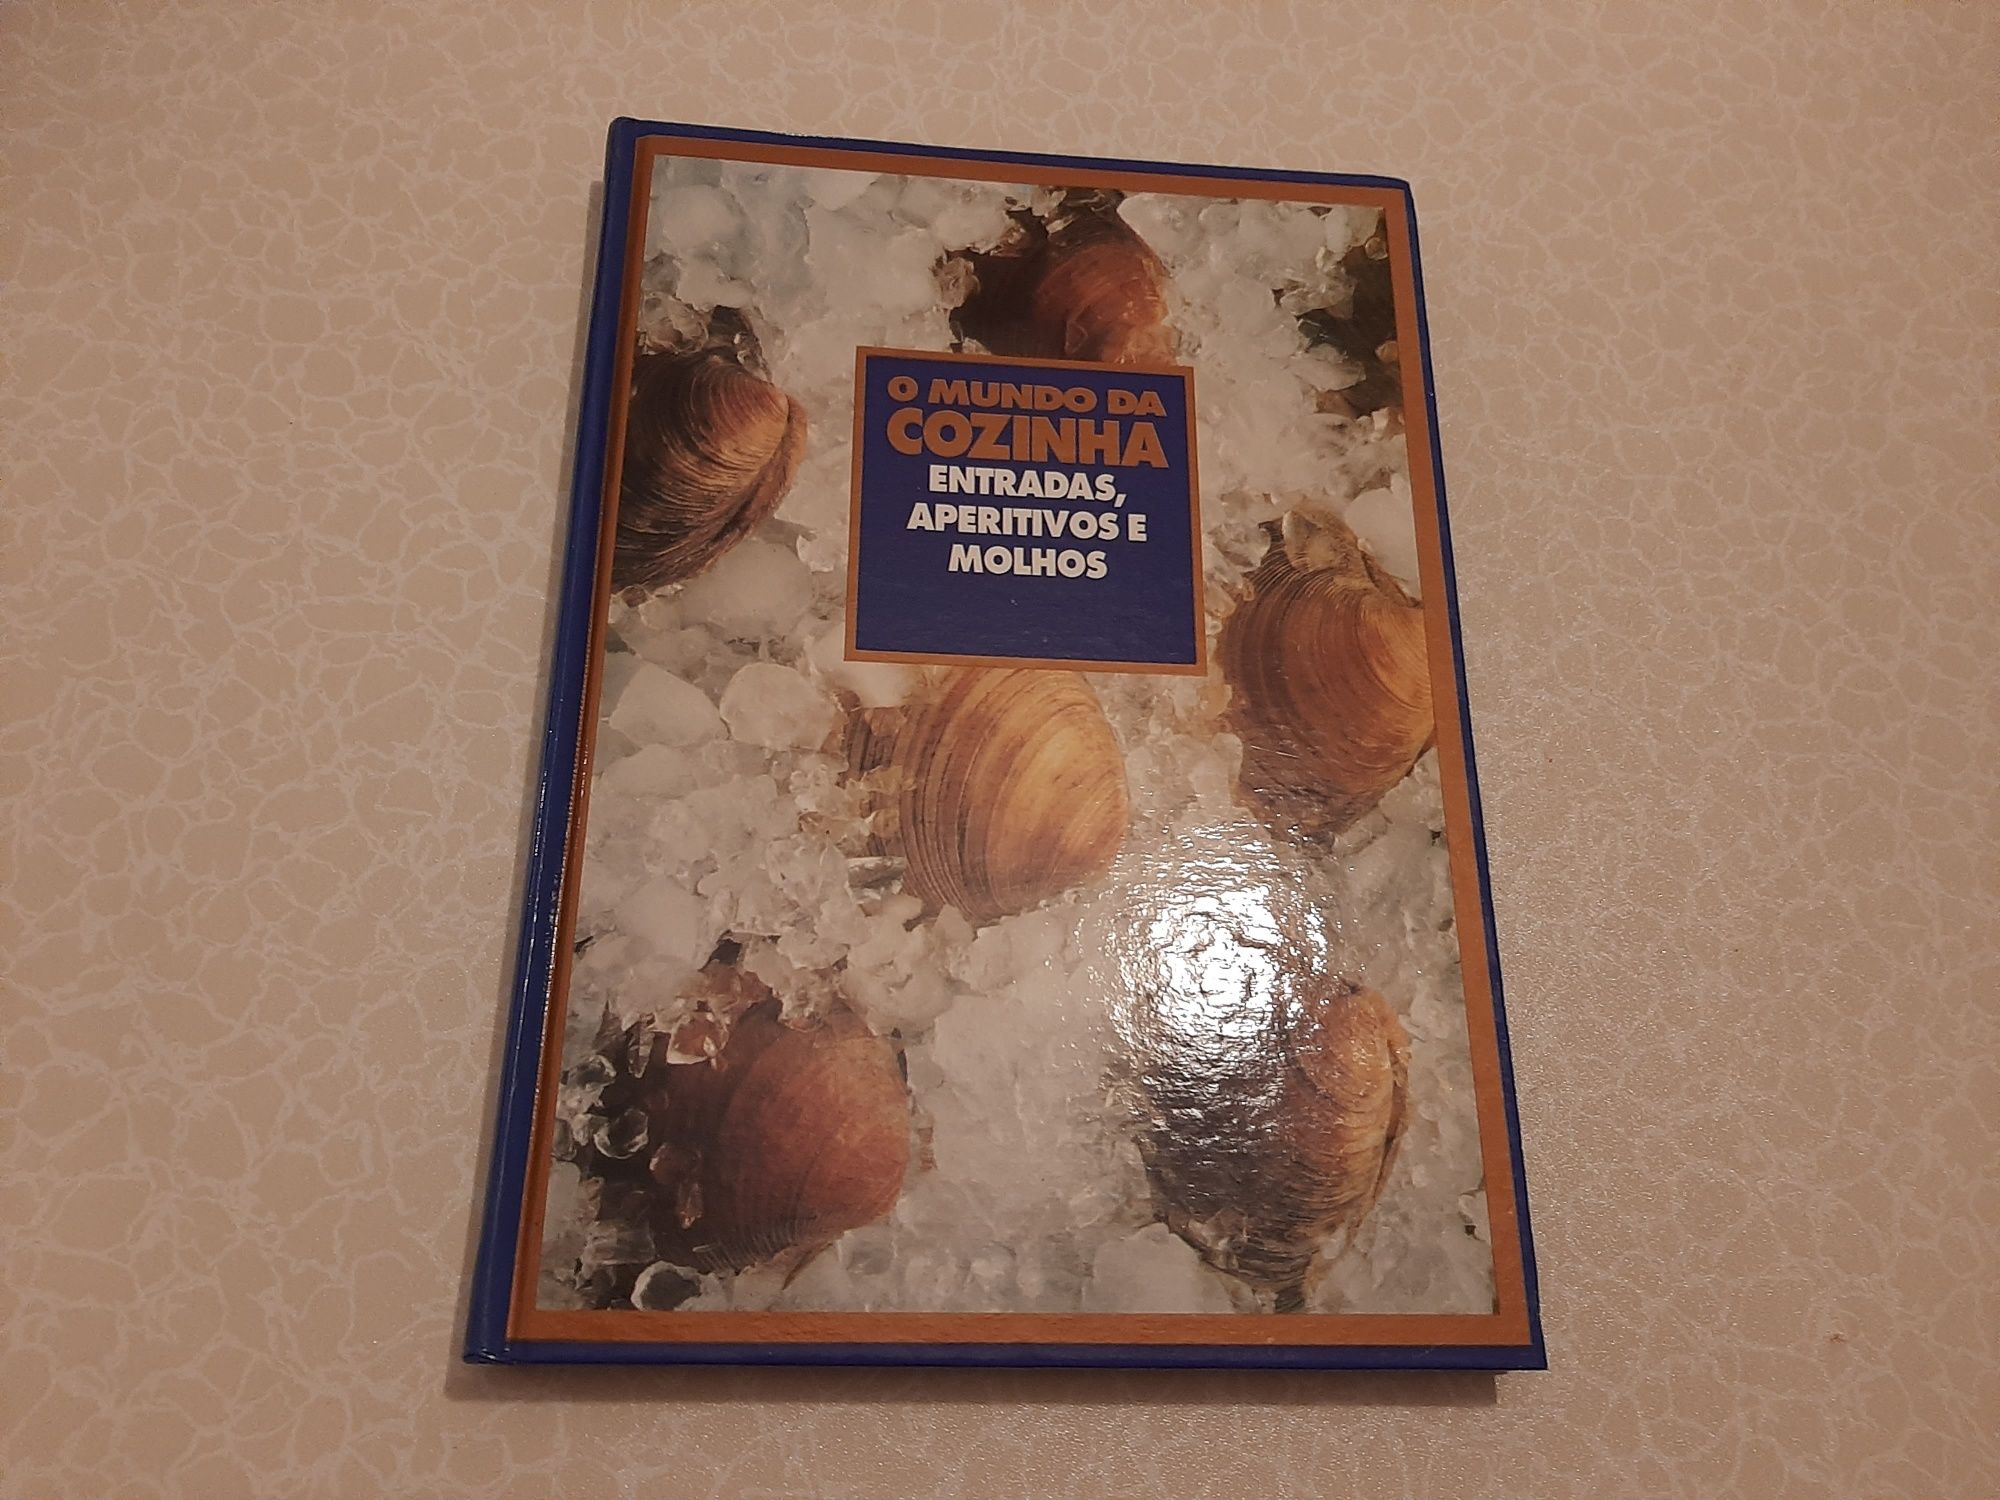 Livros culinária da Ediclube "O mundo da cozinha".